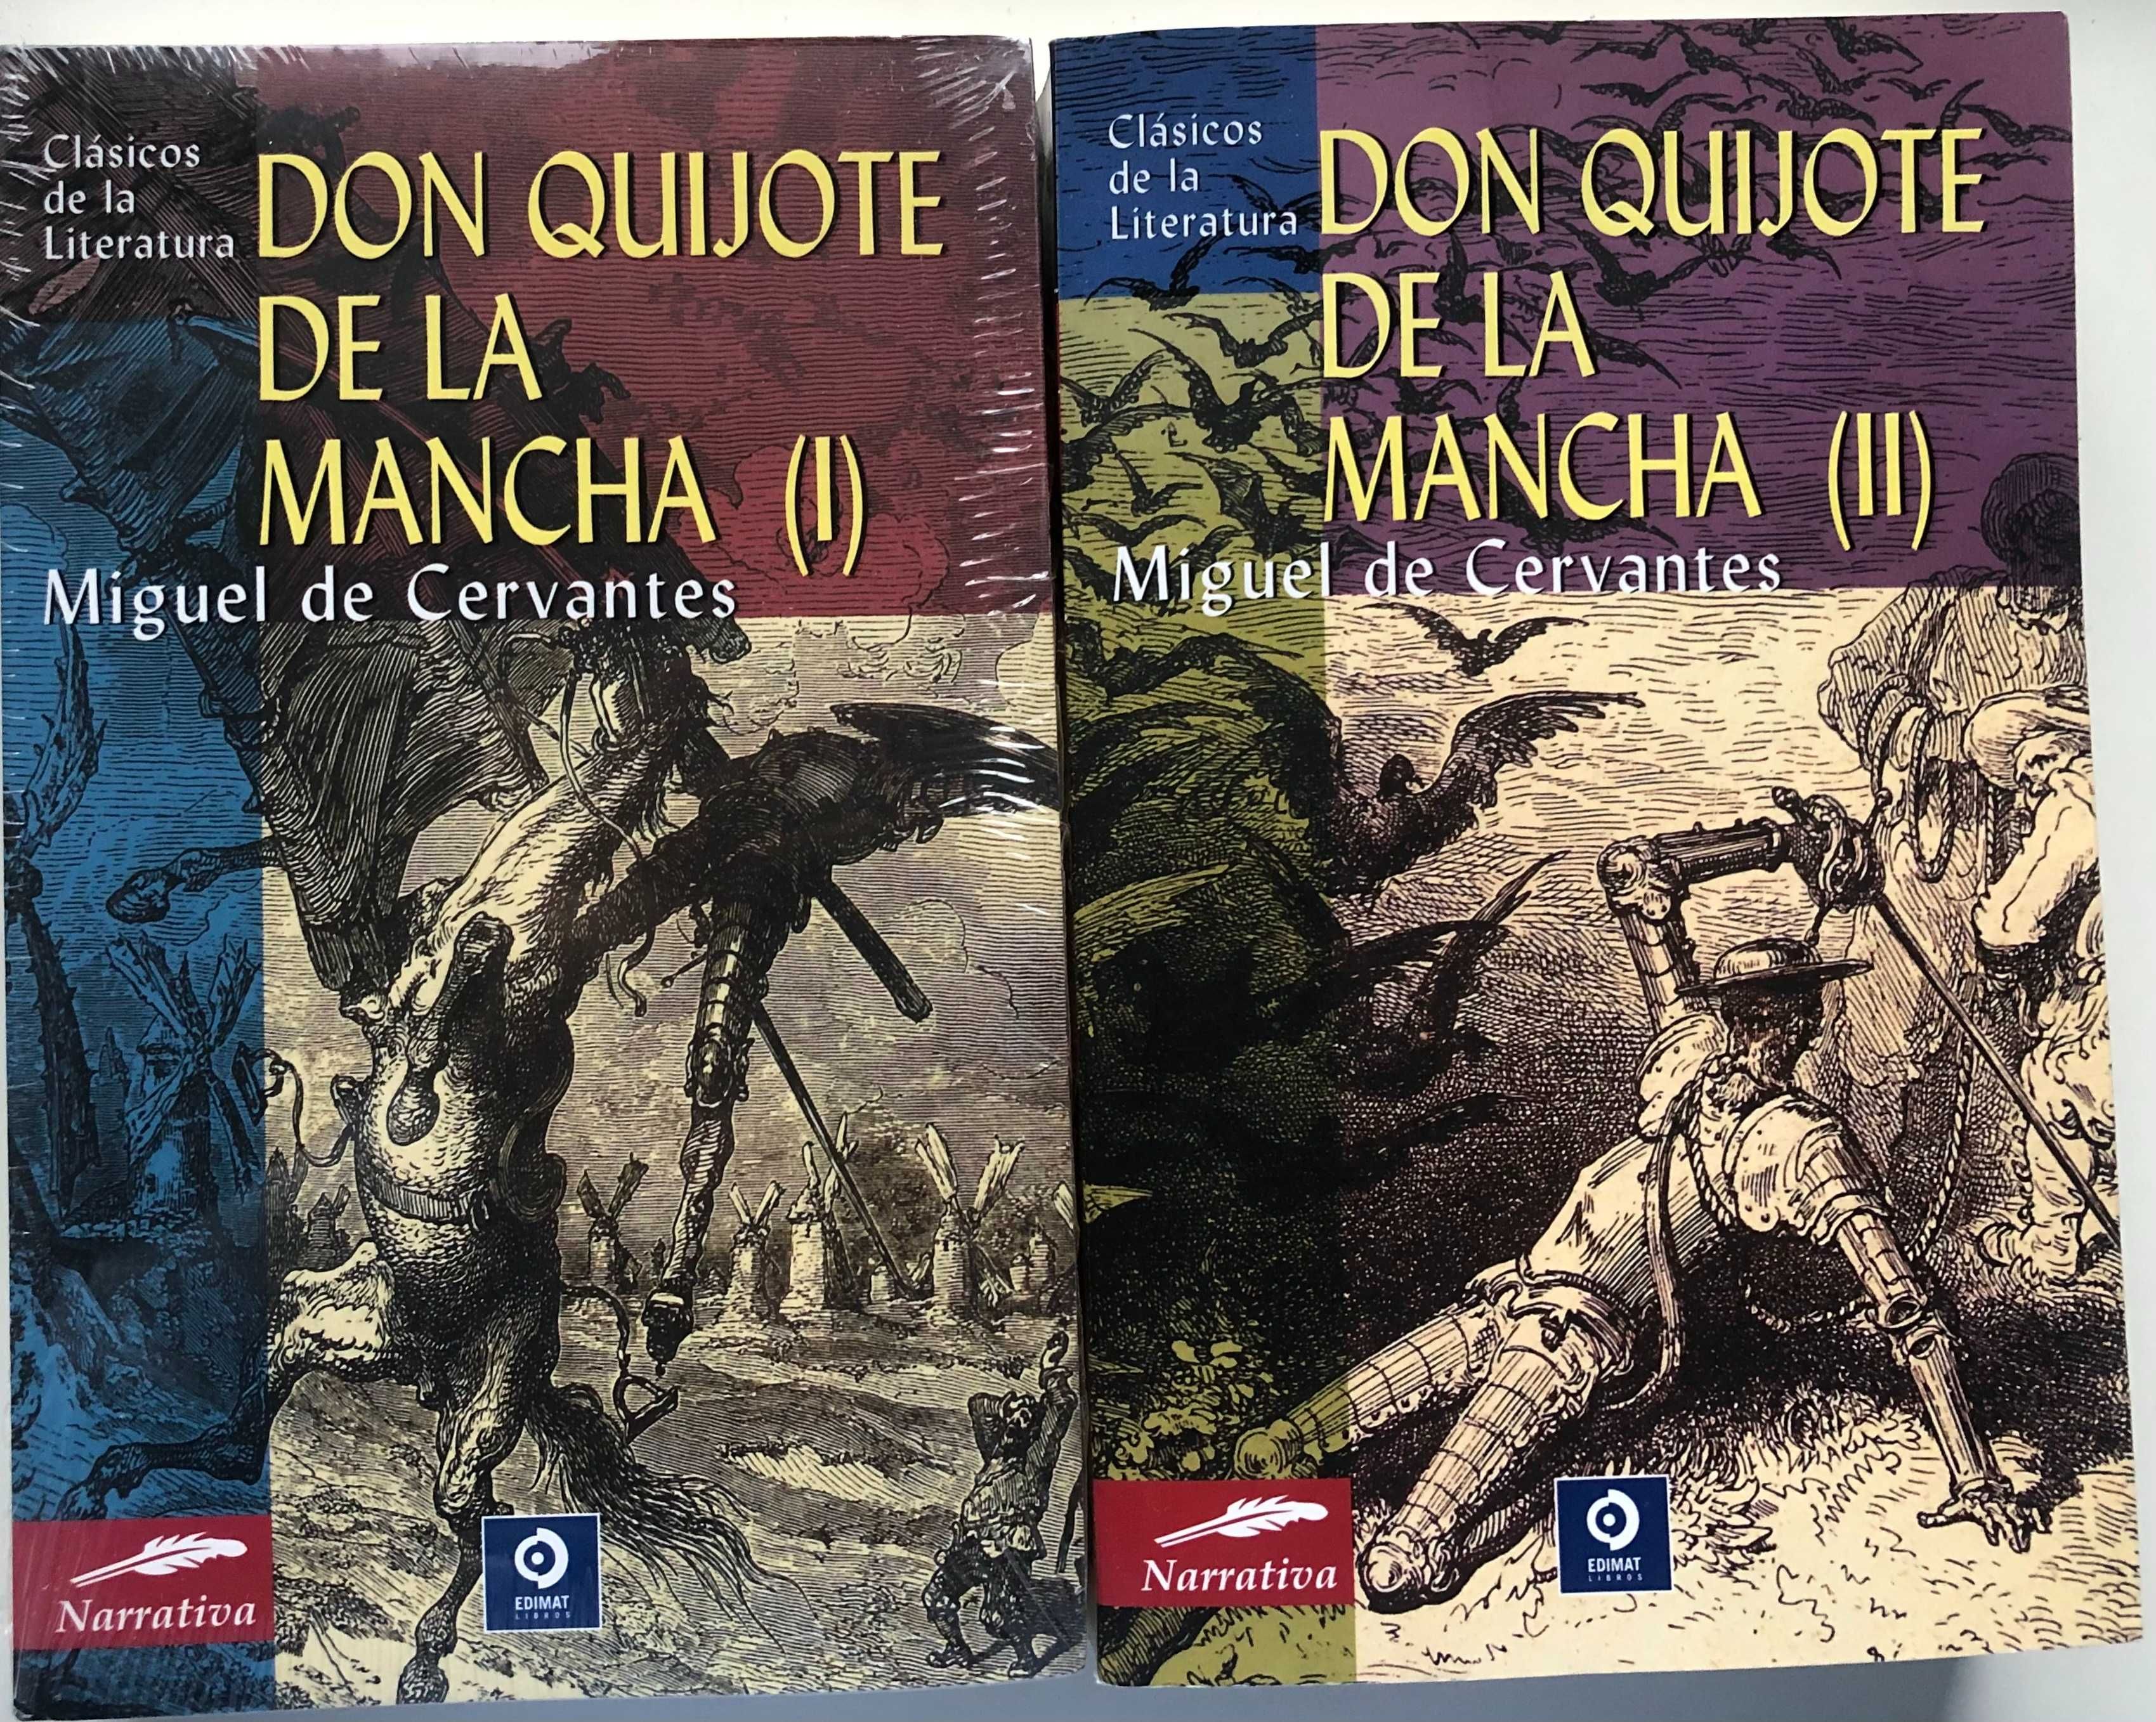 Don Quijote de la Mancha (I) e (II)